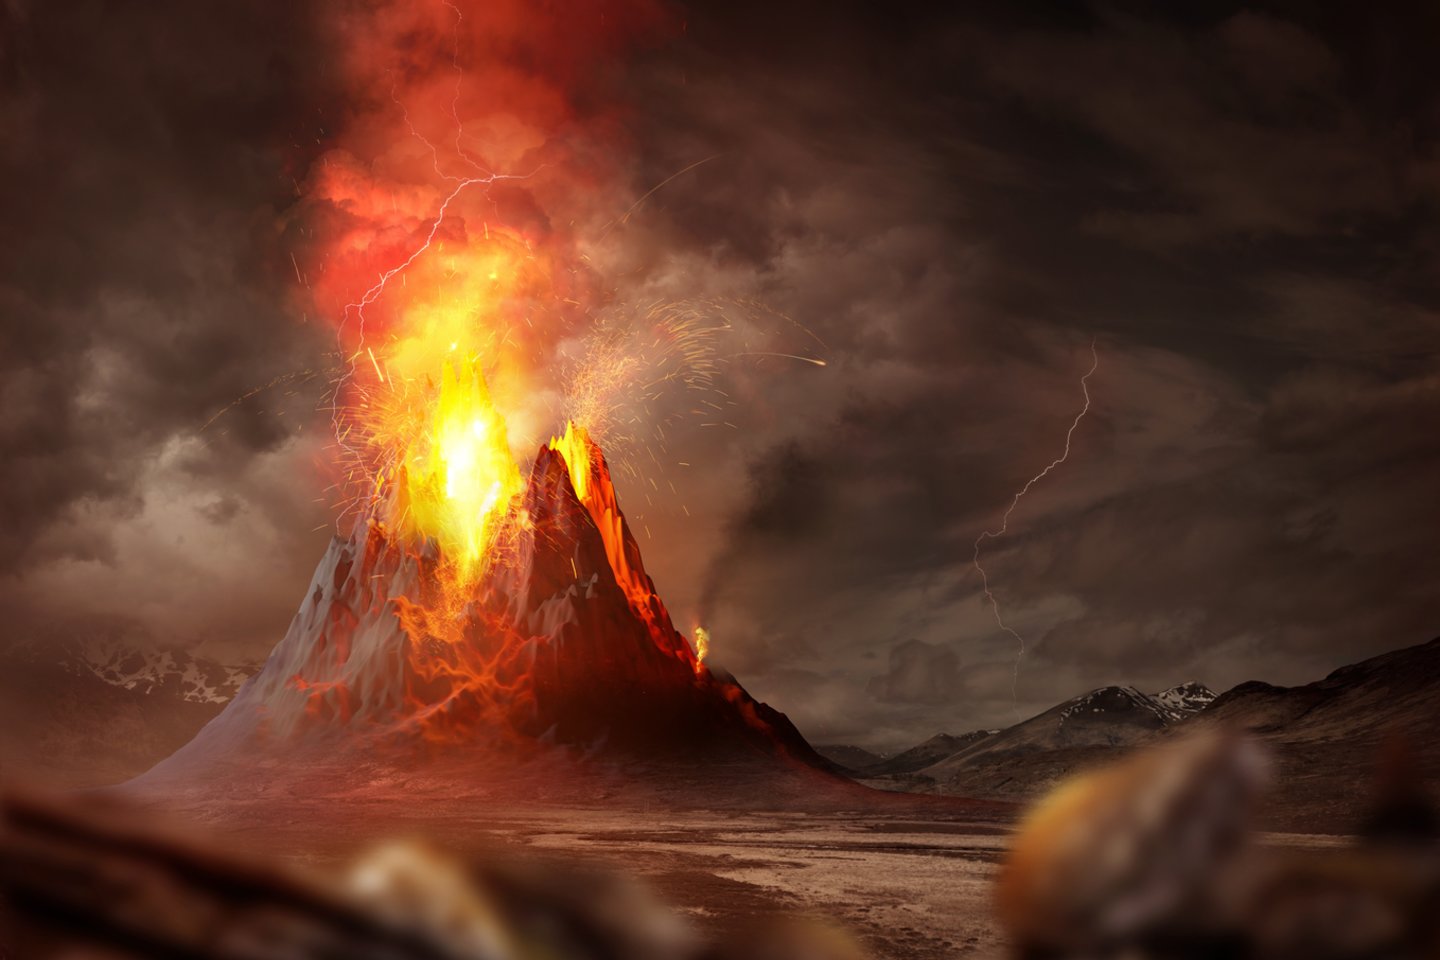  Ugnikalniai įdomūs dar ir tuo, kad pro juos į planetos paviršių išsiveržia daug dujų, kurios gali suformuoti vadinamąją antrinę atmosferą (asociatyvinė iliustr.).<br> 123rf iliustr.